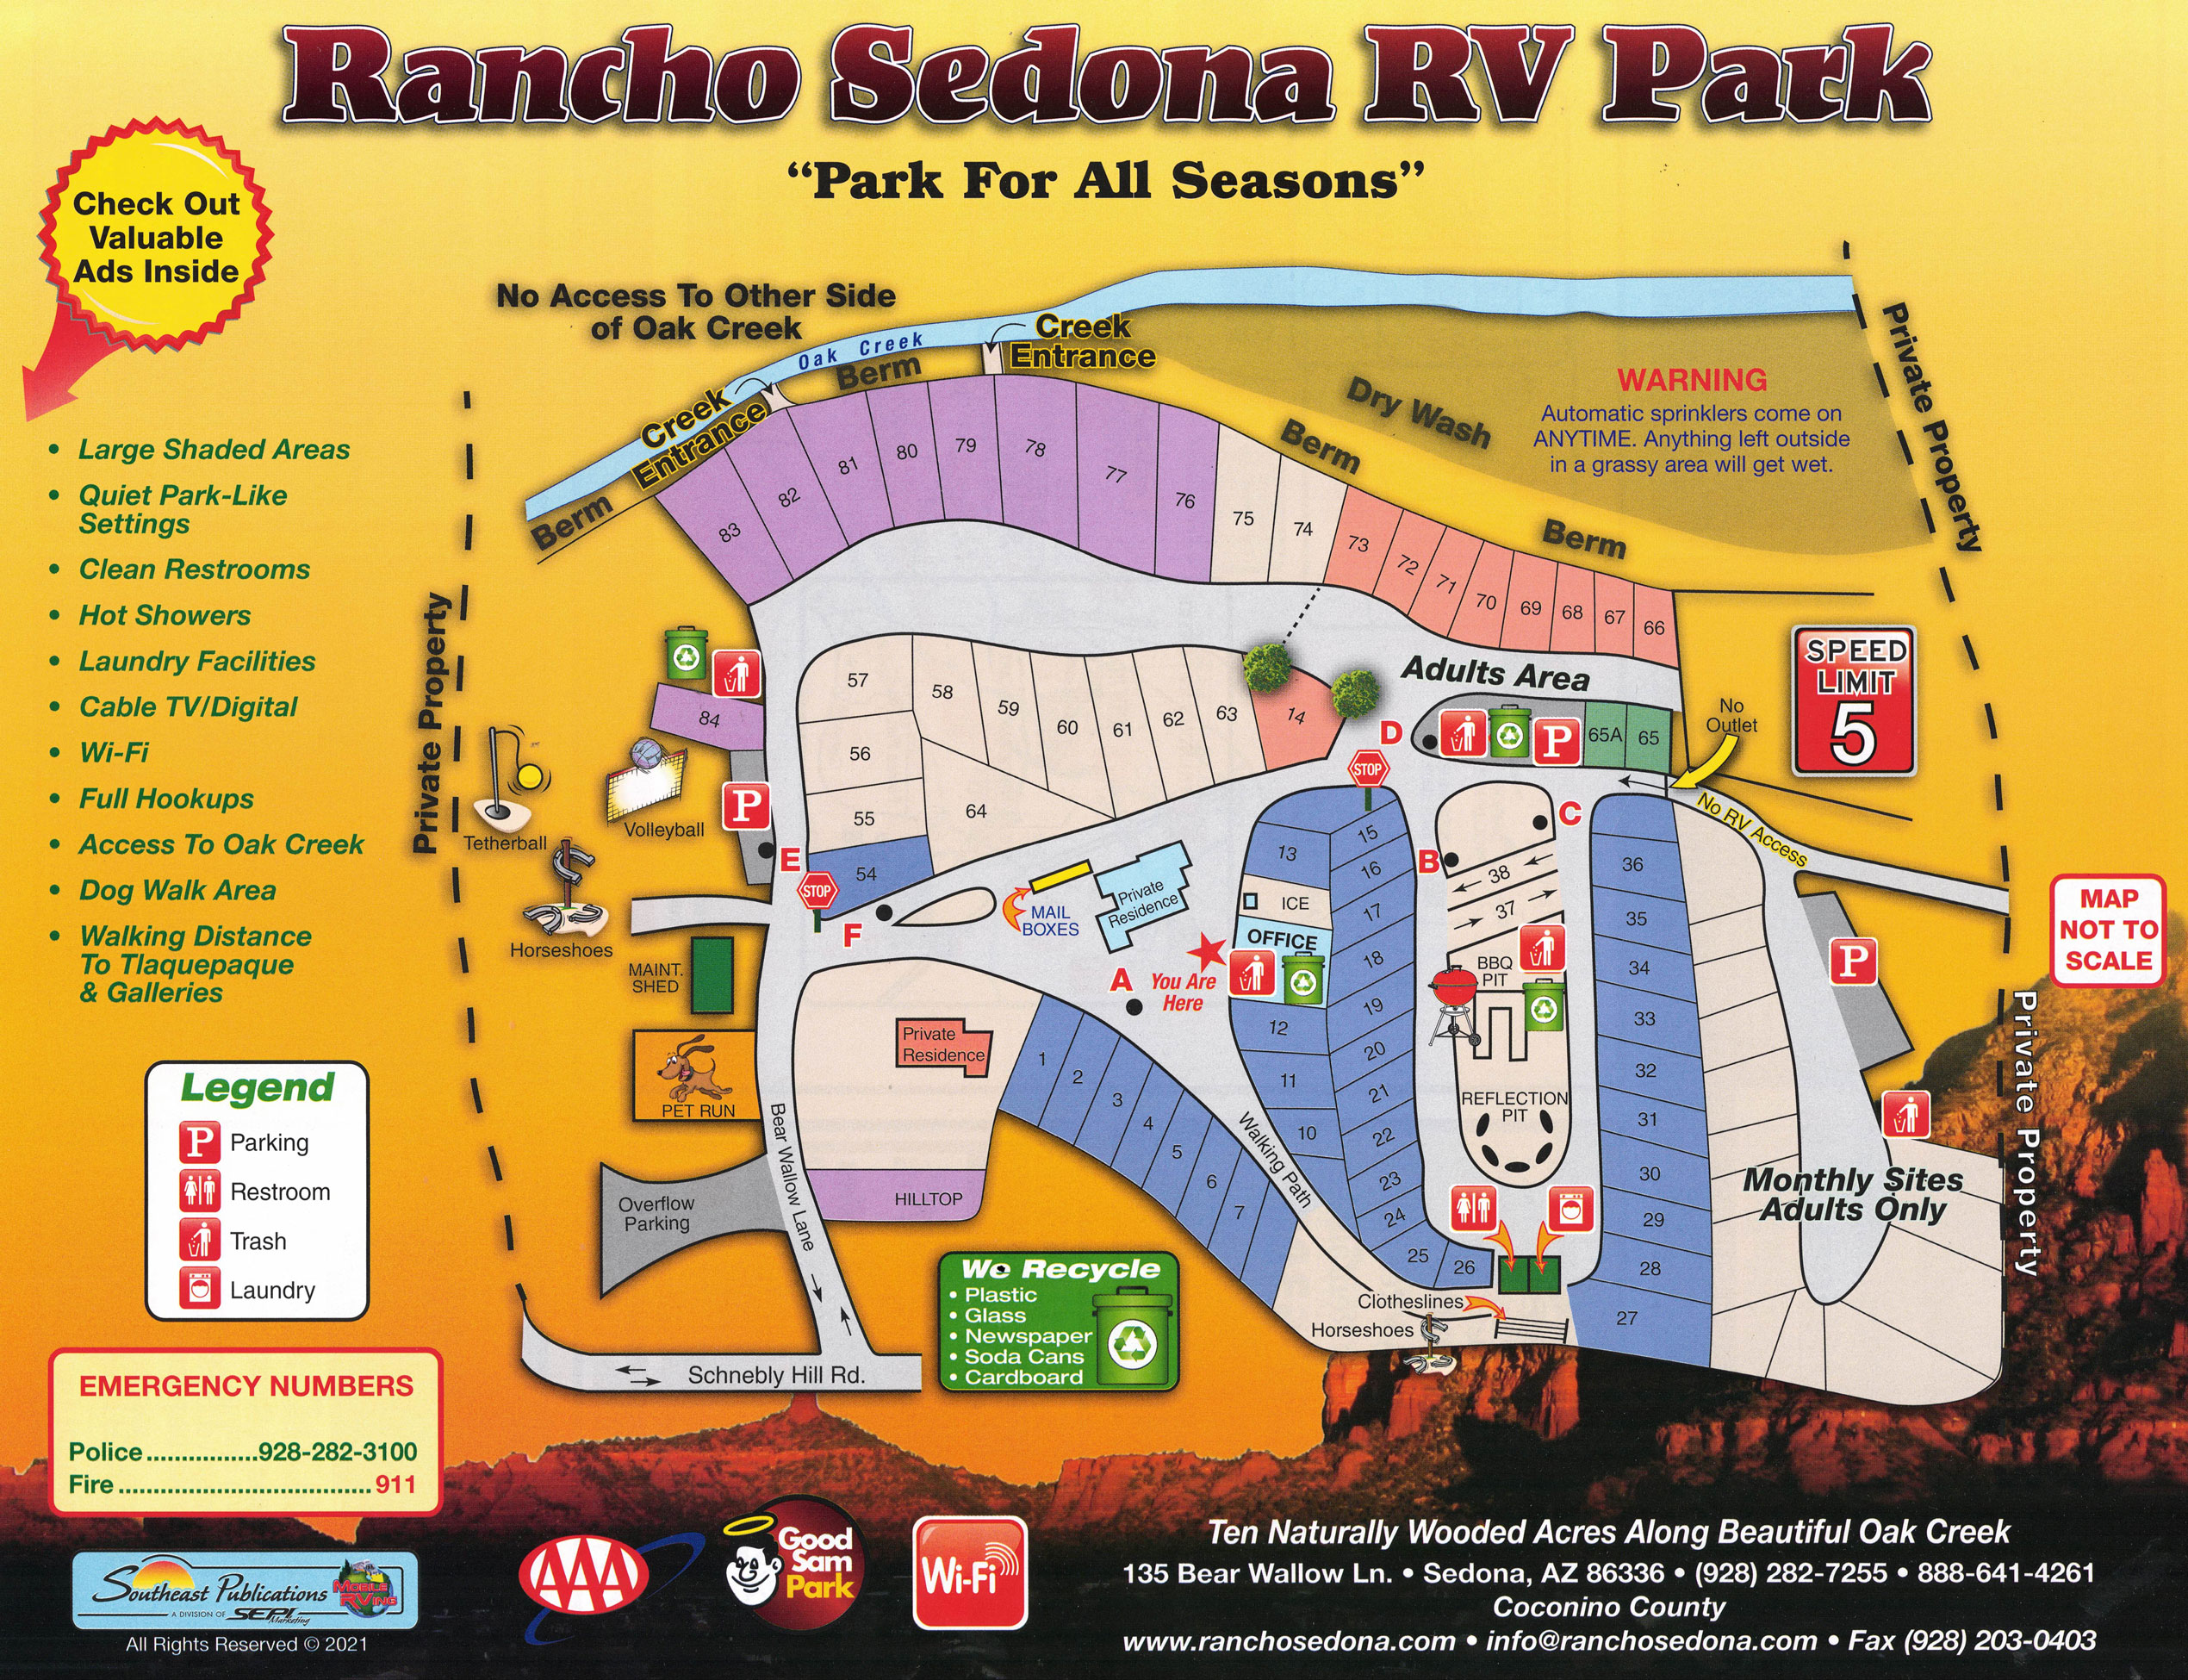 Rancho Sedona RV Park